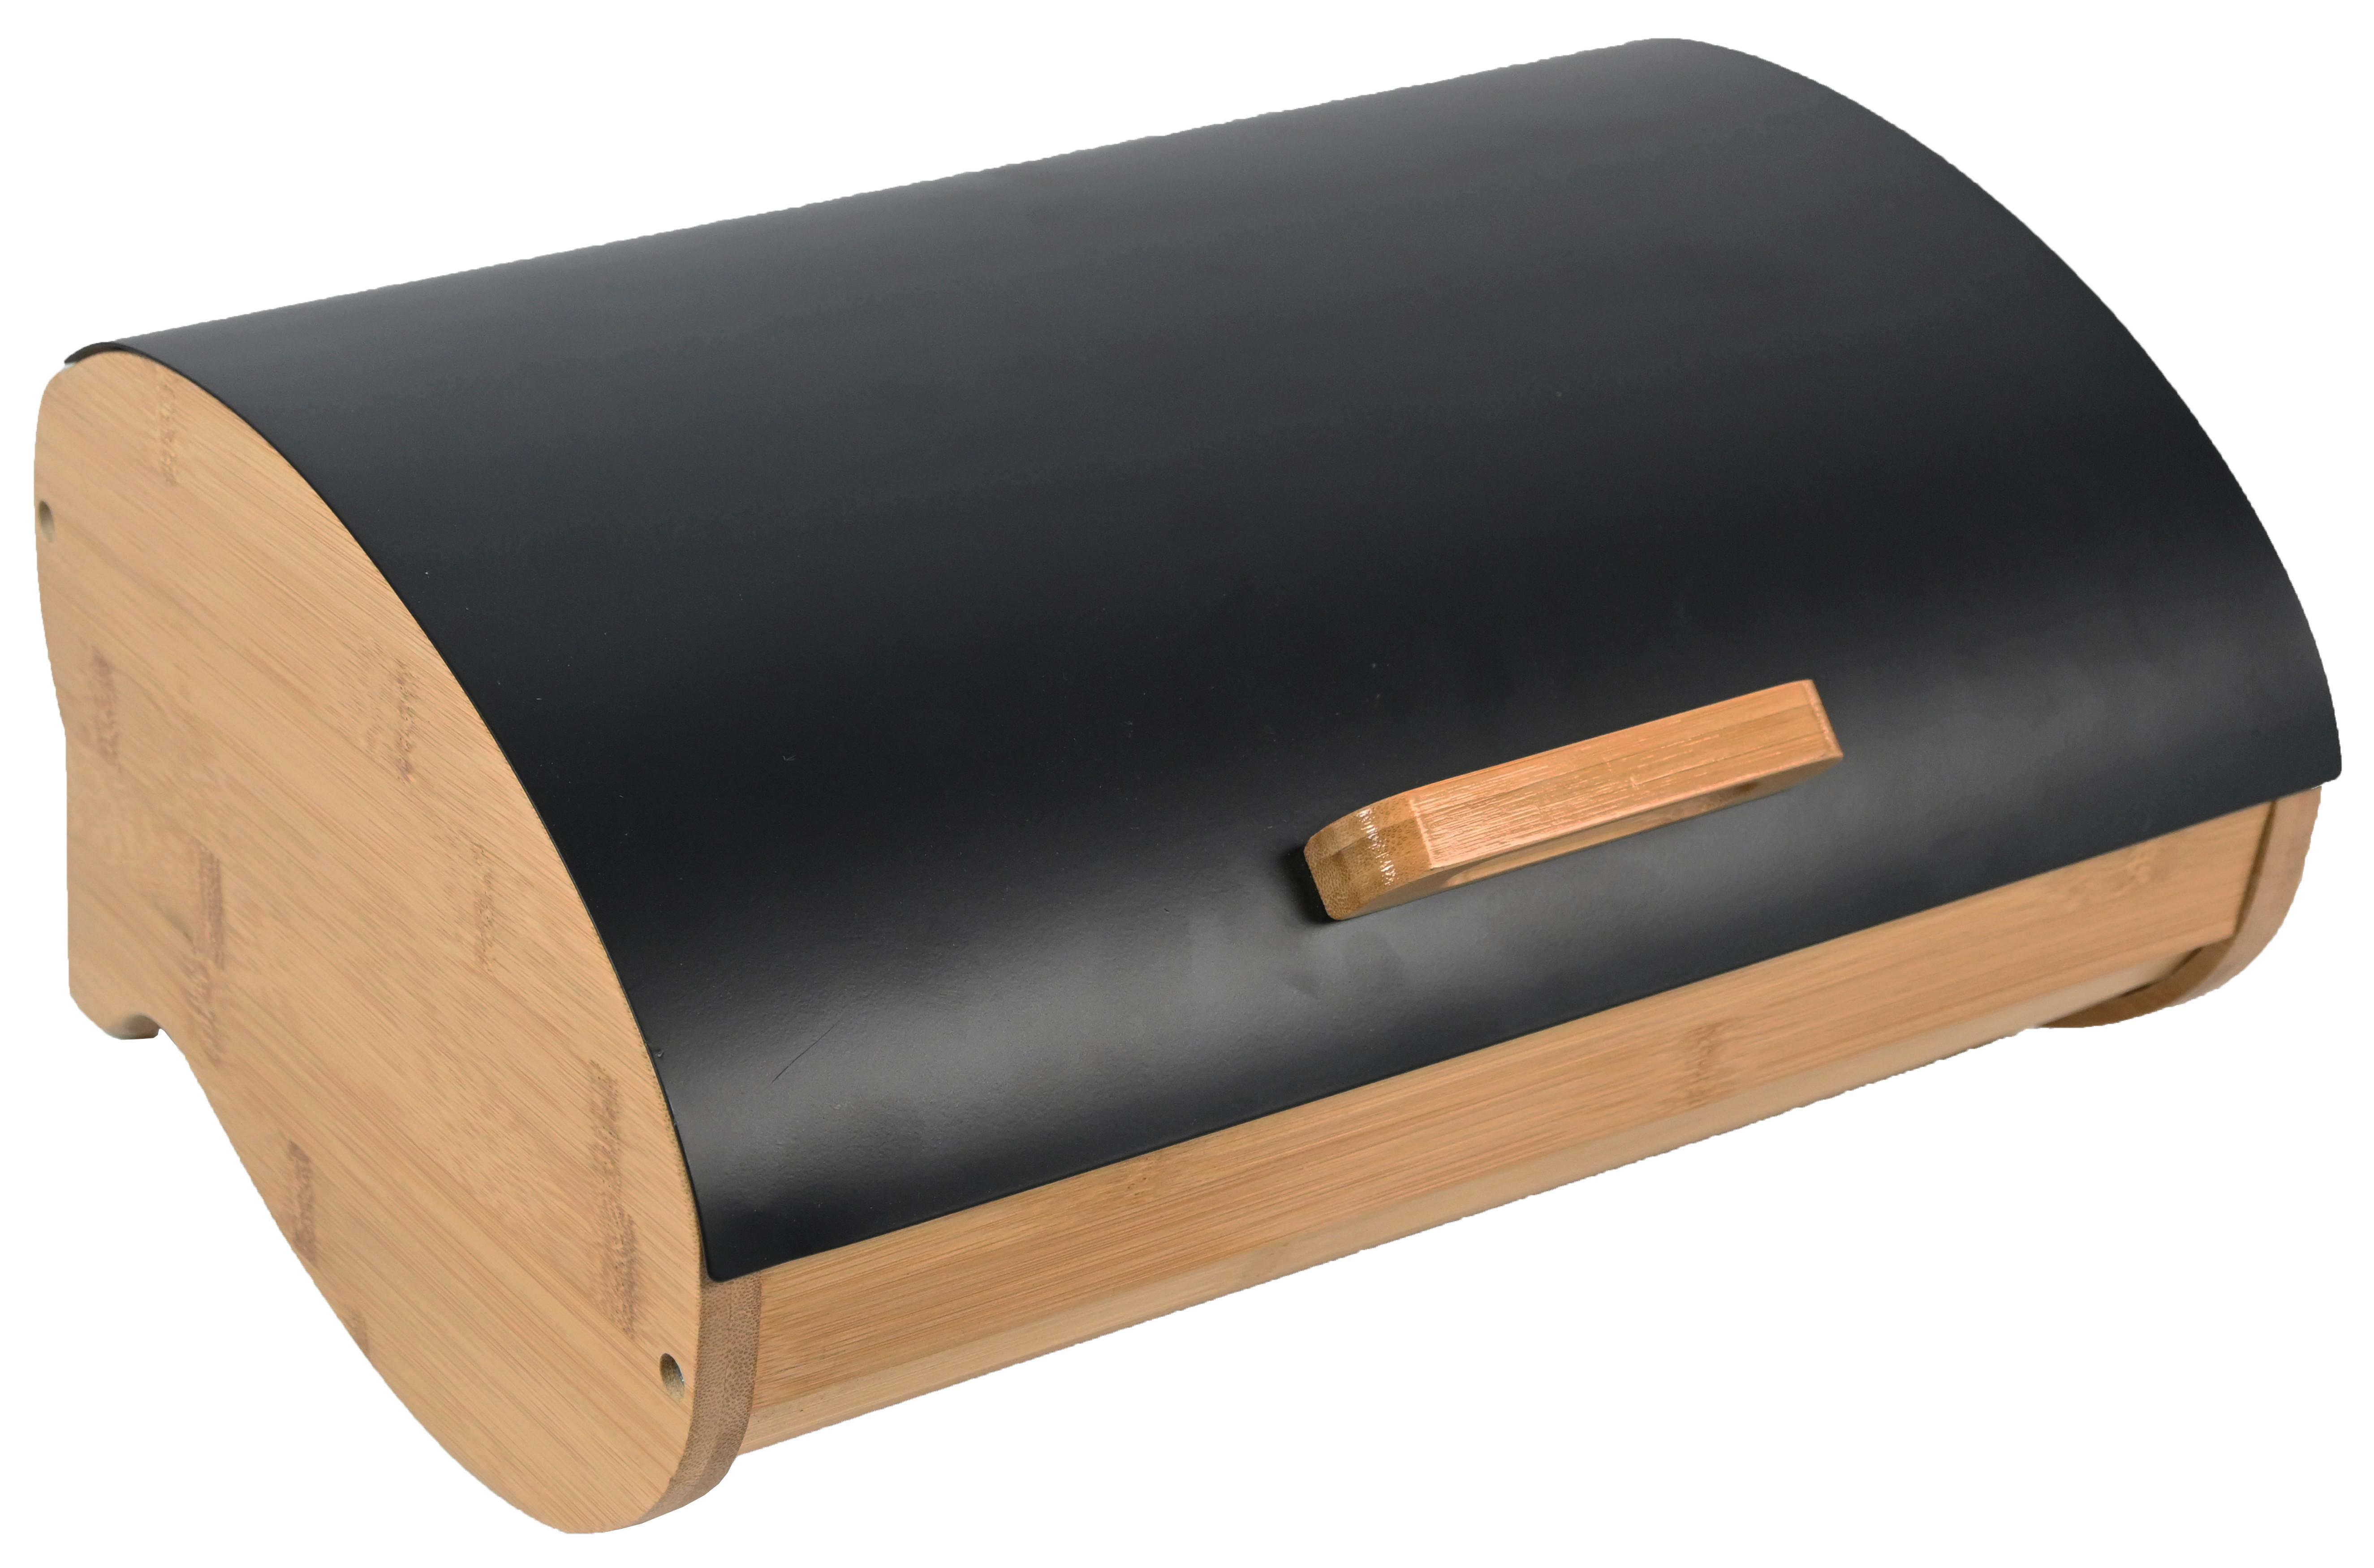 Box Na Chléb Svea -Bp- - černá/přírodní barvy, Moderní, kov/dřevo (35/25/15,5cm) - Modern Living